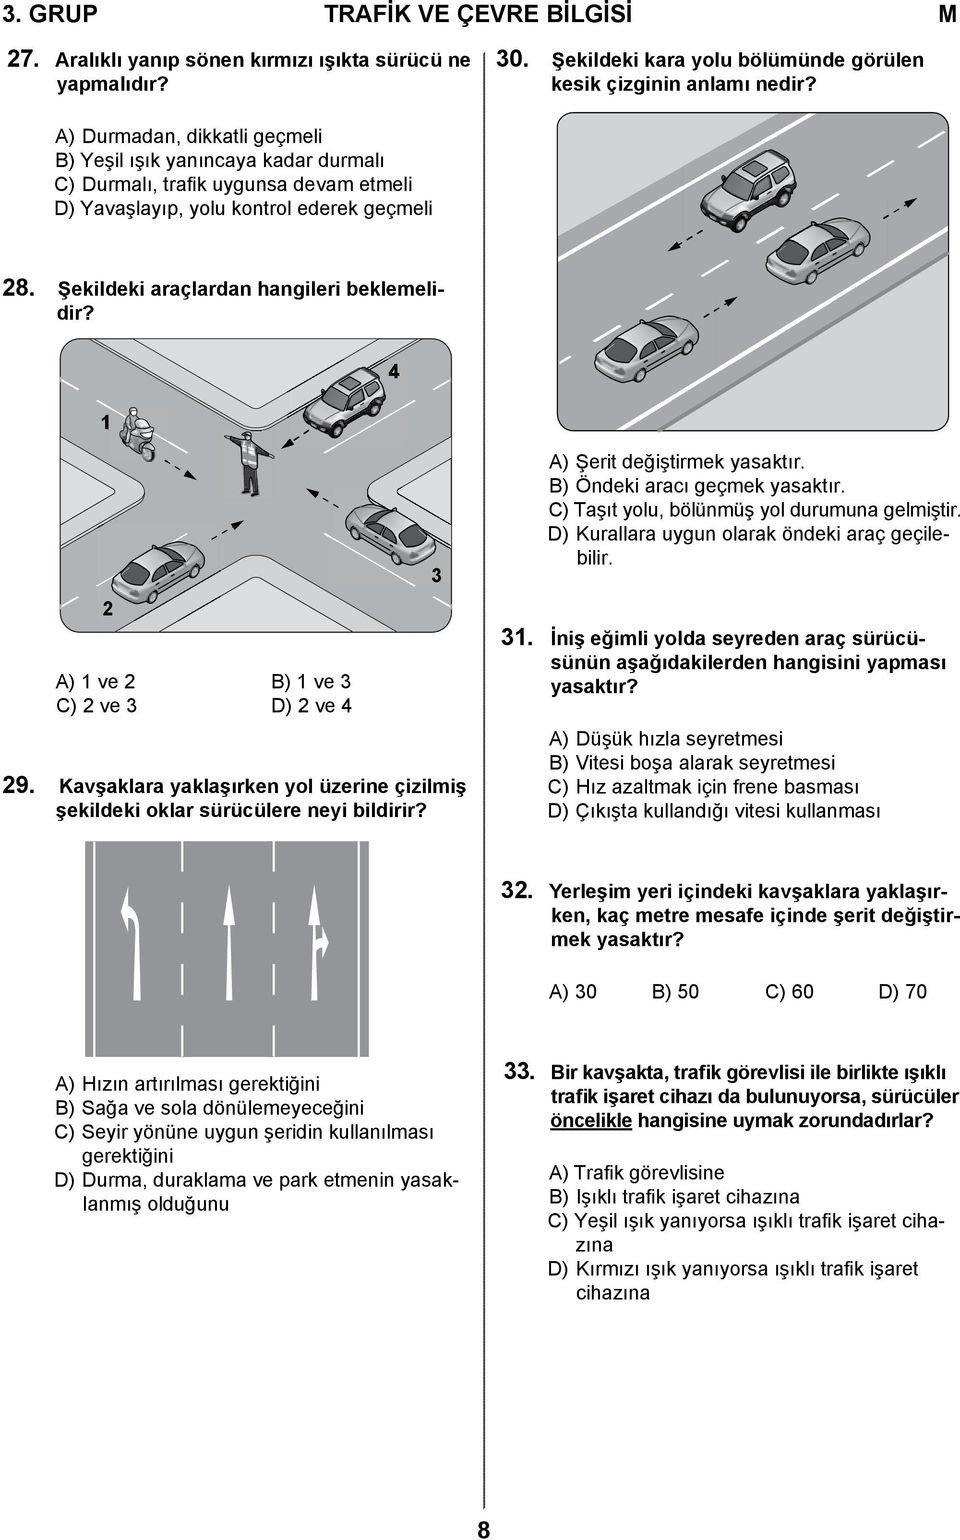 1 4 2 A) 1 ve 2 B) 1 ve 3 C) 2 ve 3 D) 2 ve 4 29. Kavşaklara yaklaşırken yol üzerine çizilmiş şekildeki oklar sürücülere neyi bildirir? 3 A) Şerit değiştirmek yasaktır.